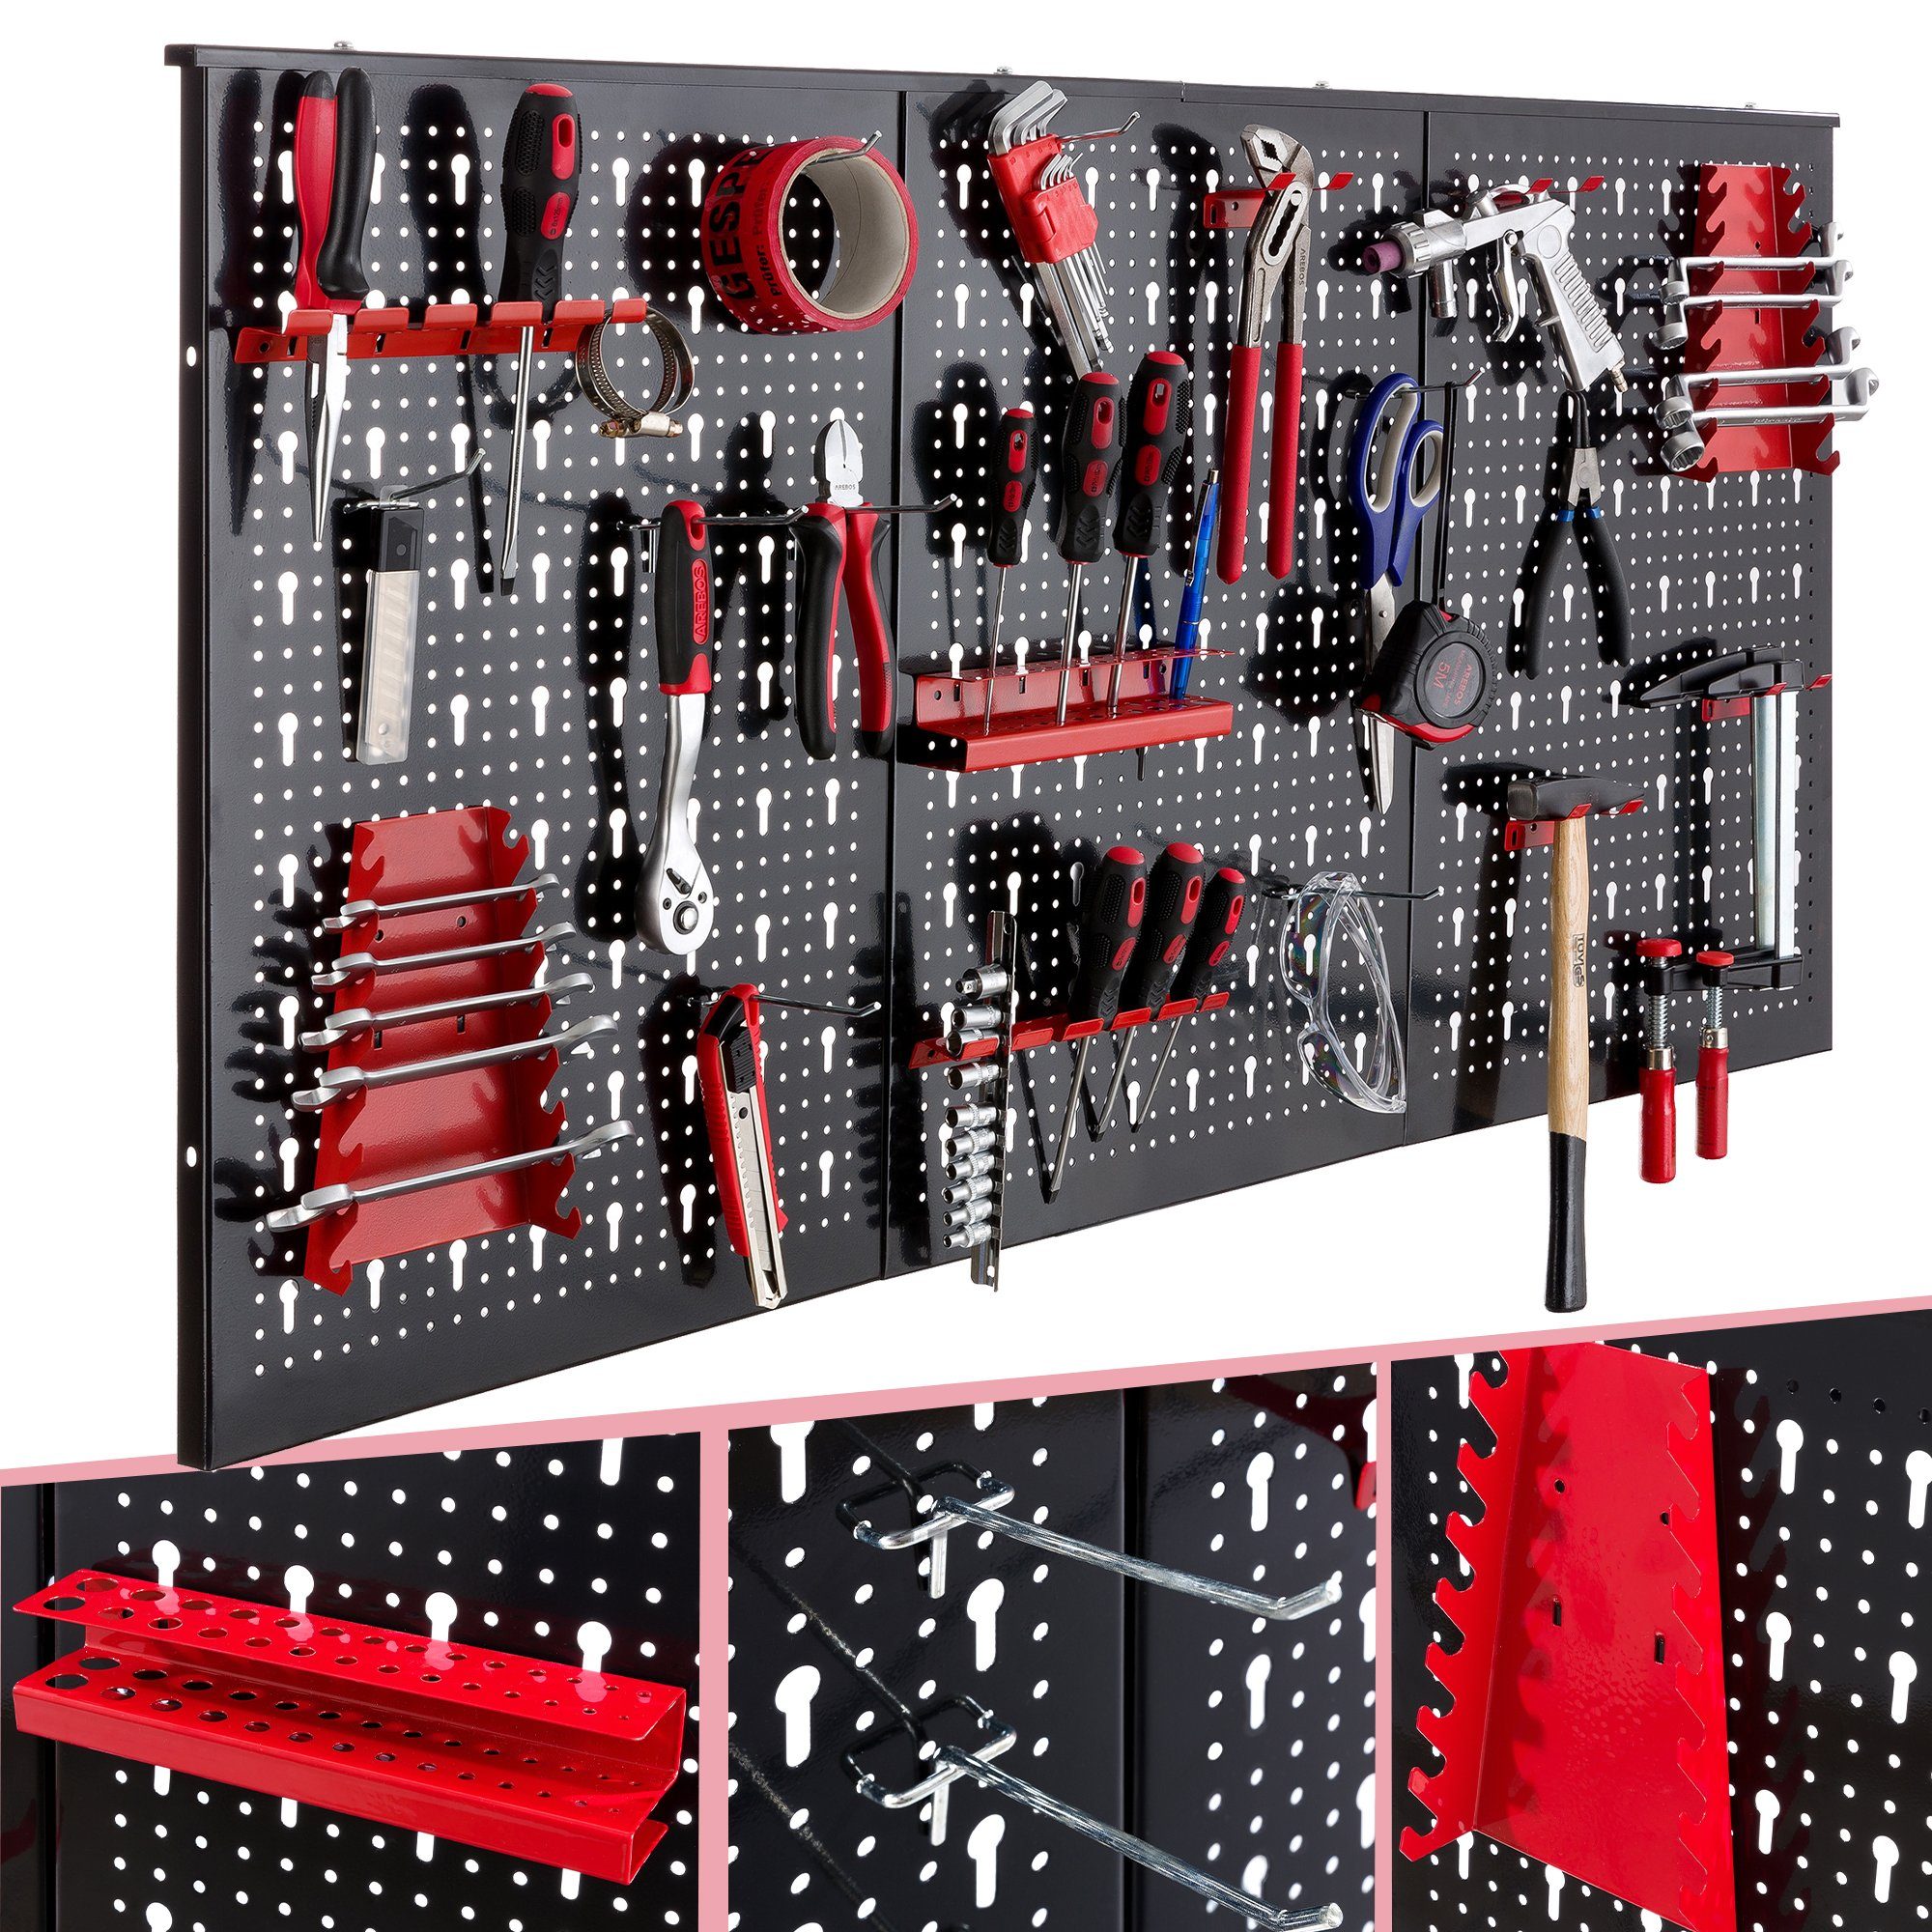 Arebos Lochwand Werkzeugwand dreiteilig, 17-teiliges Hakenset Rot / Blau, 3 Stk., mit 17 Haken, (Set)